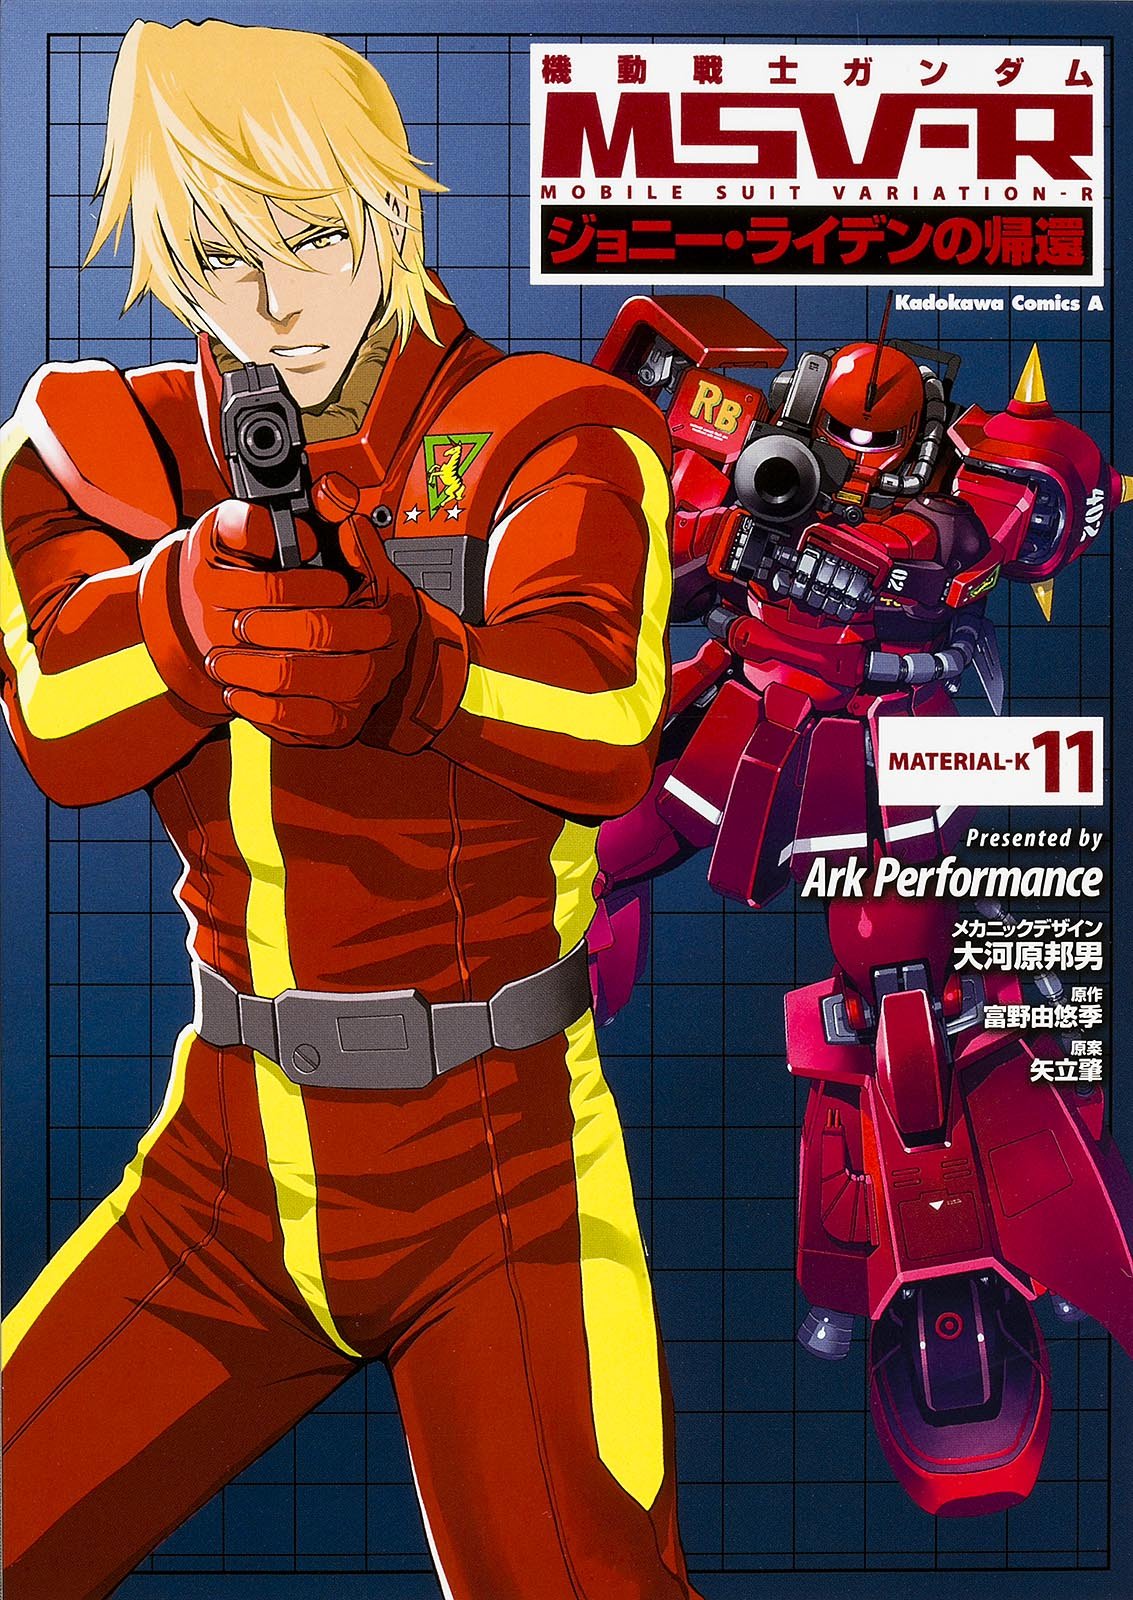 Mobile Suit Gundam MSV-R The Return of Johnny Ridden #11 /Comic